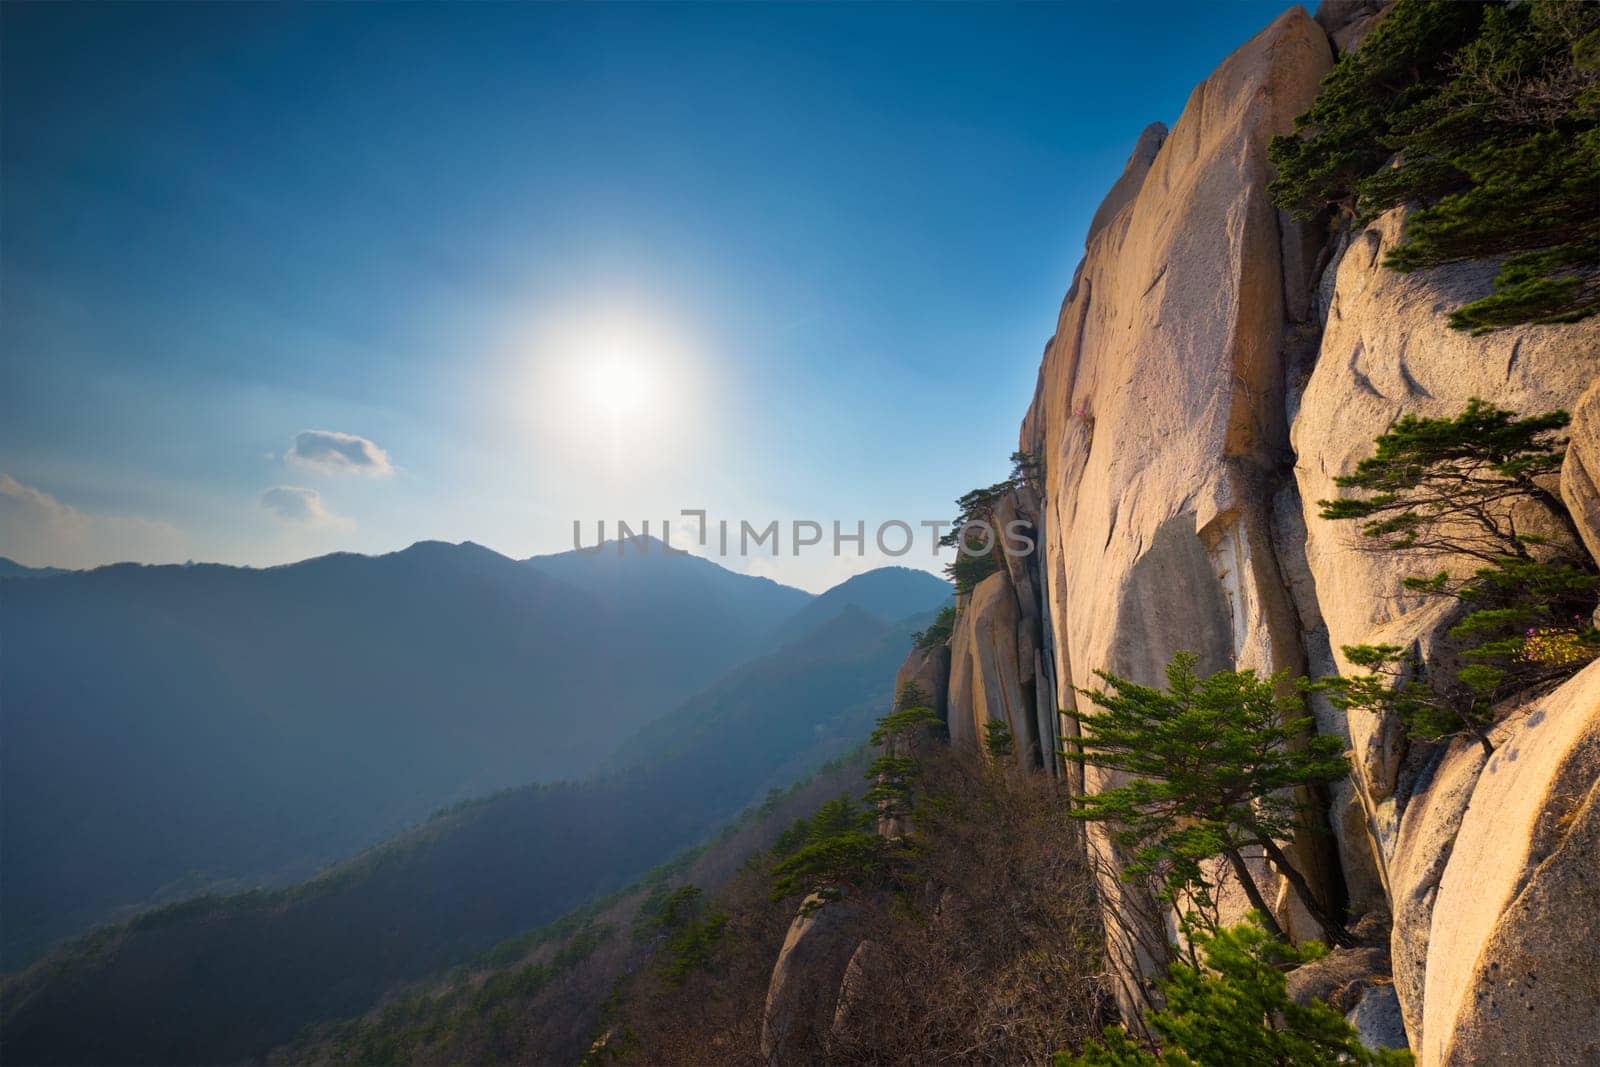 Ulsanbawi rock in Seoraksan National Park, South Korea by dimol